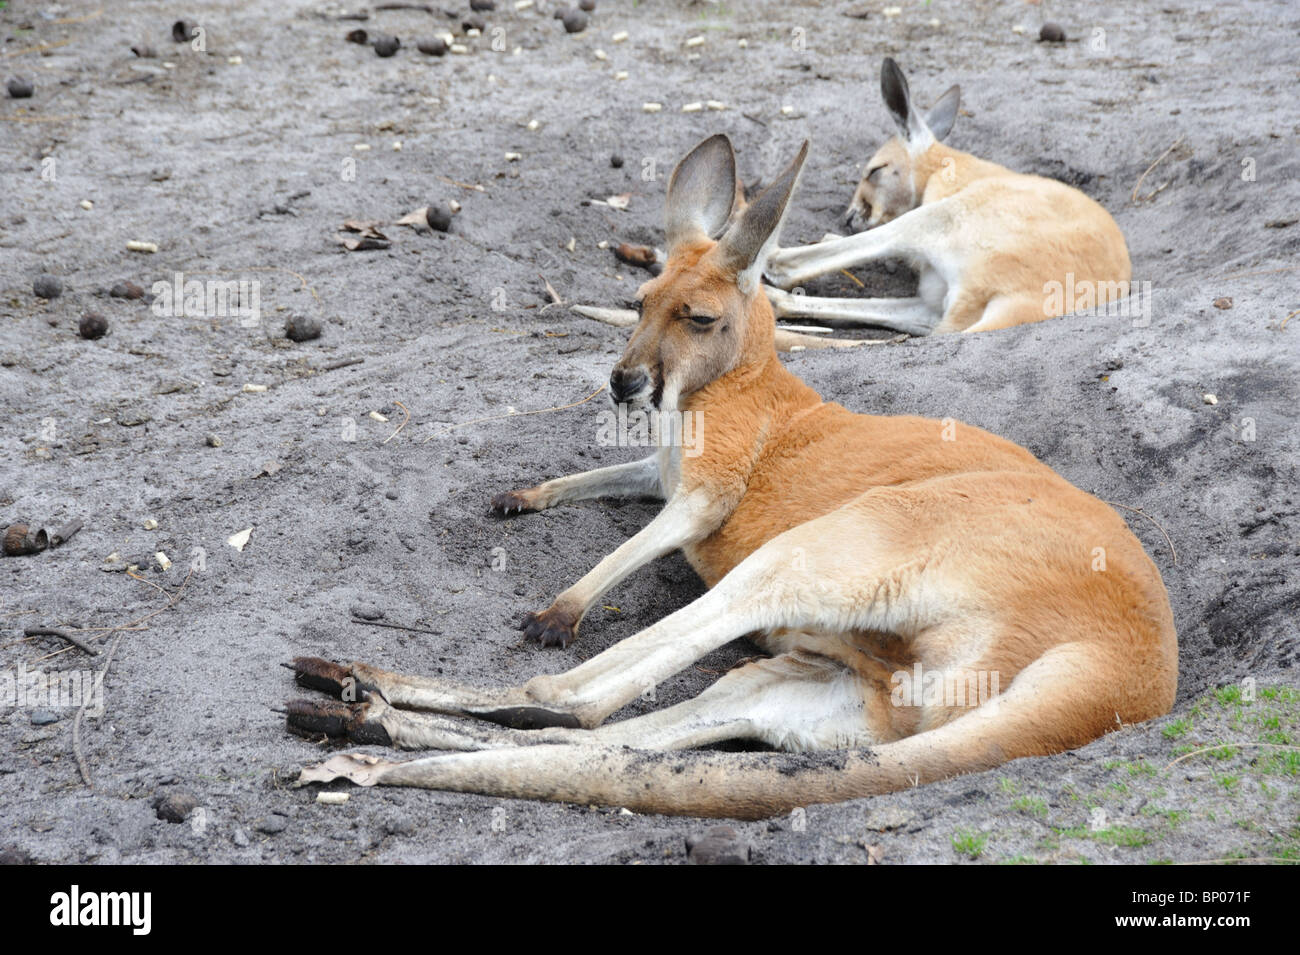 Le kangoroo - symbole national de l'Australie Banque D'Images